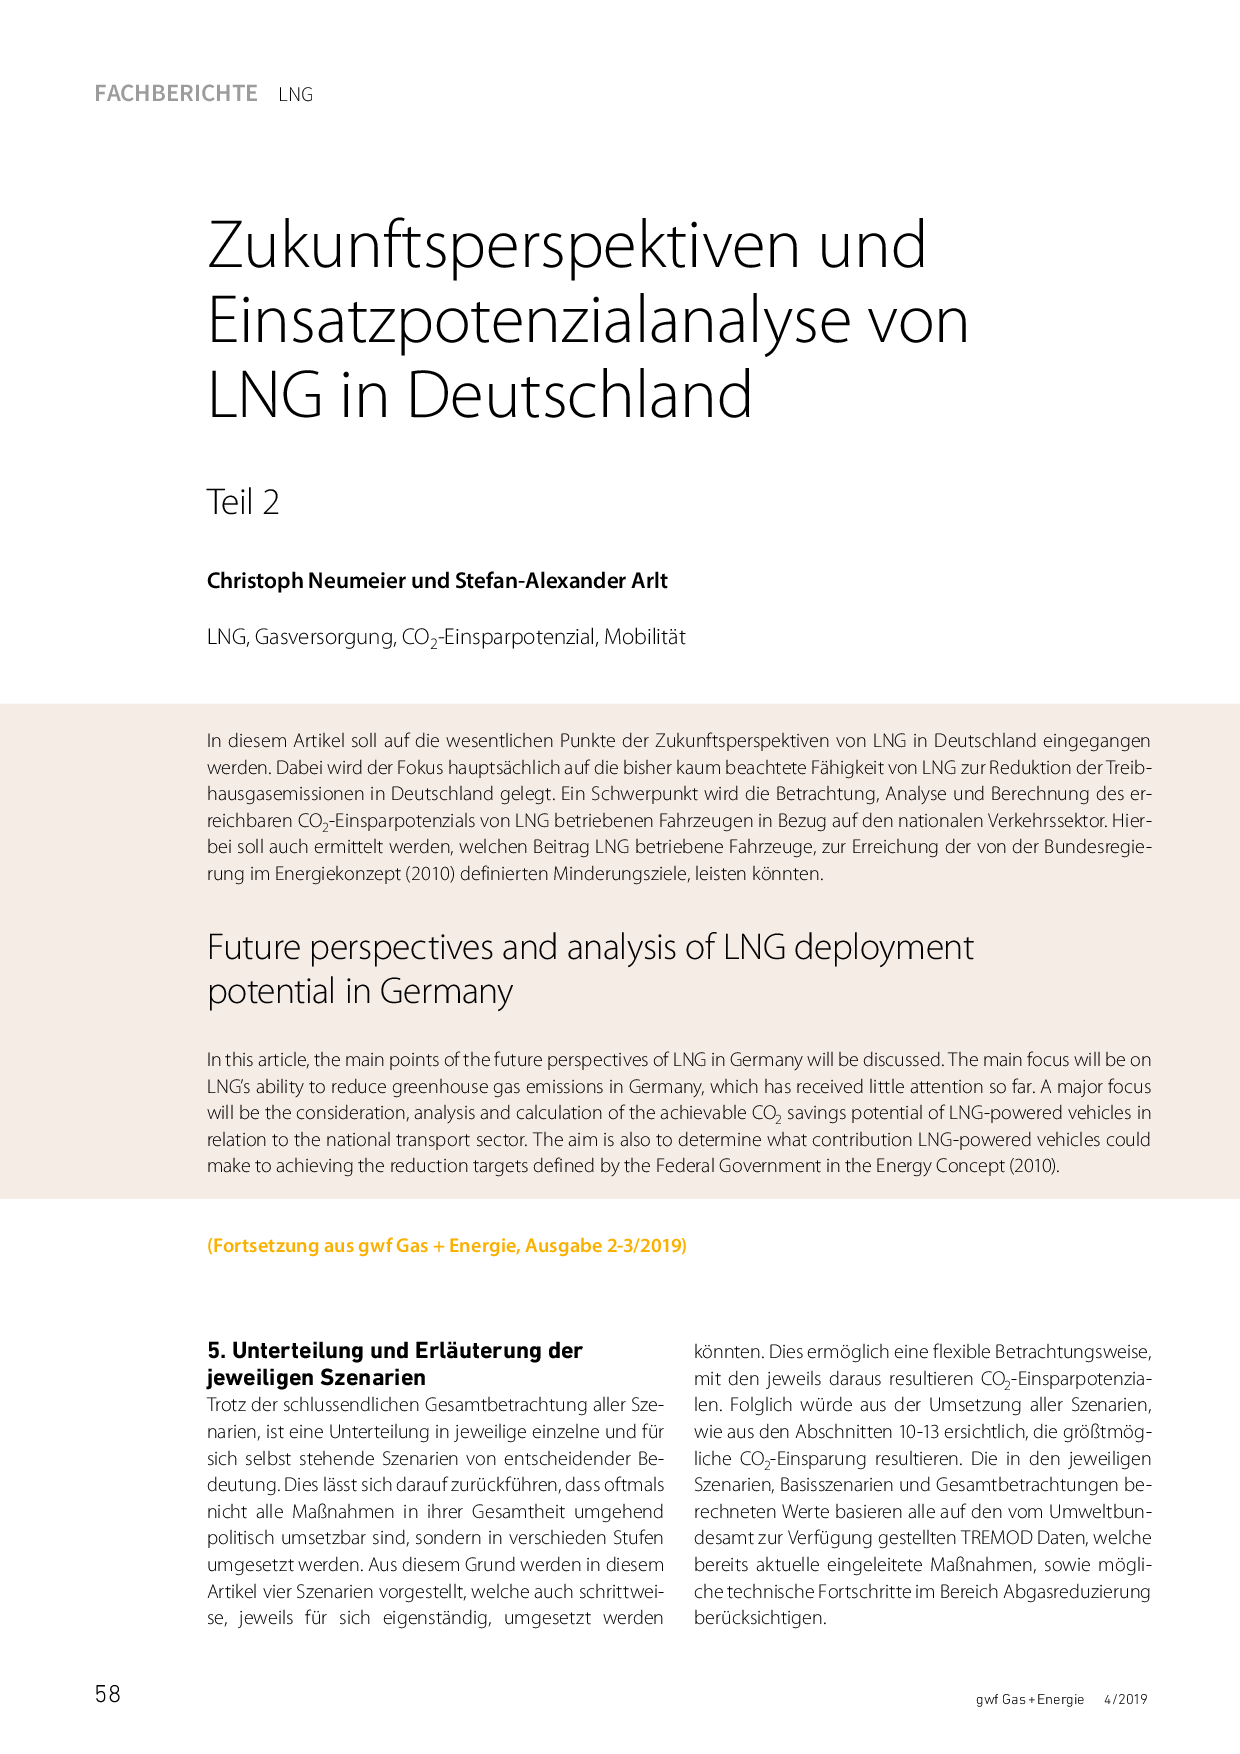 Zukunftsperspektiven und Einsatzpotenzialanalyse von LNG in Deutschland